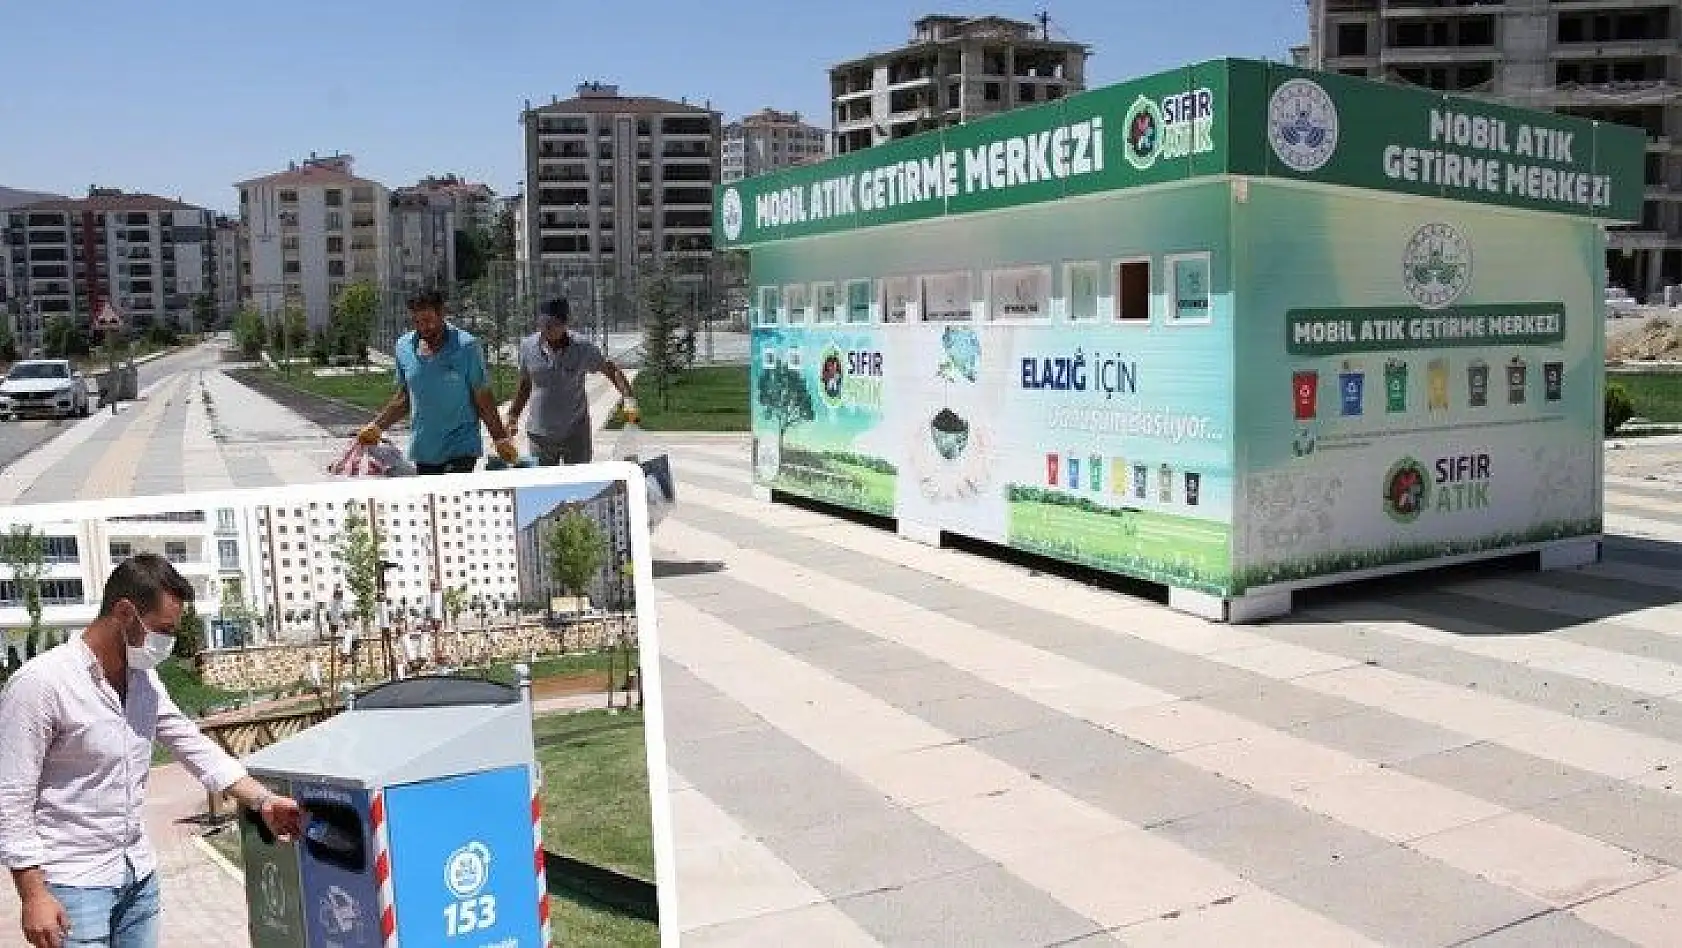 Elazığ Belediyesi kentin farklı noktalarına 'Mobil Atık Getirme Merkezleri' oluşturdu